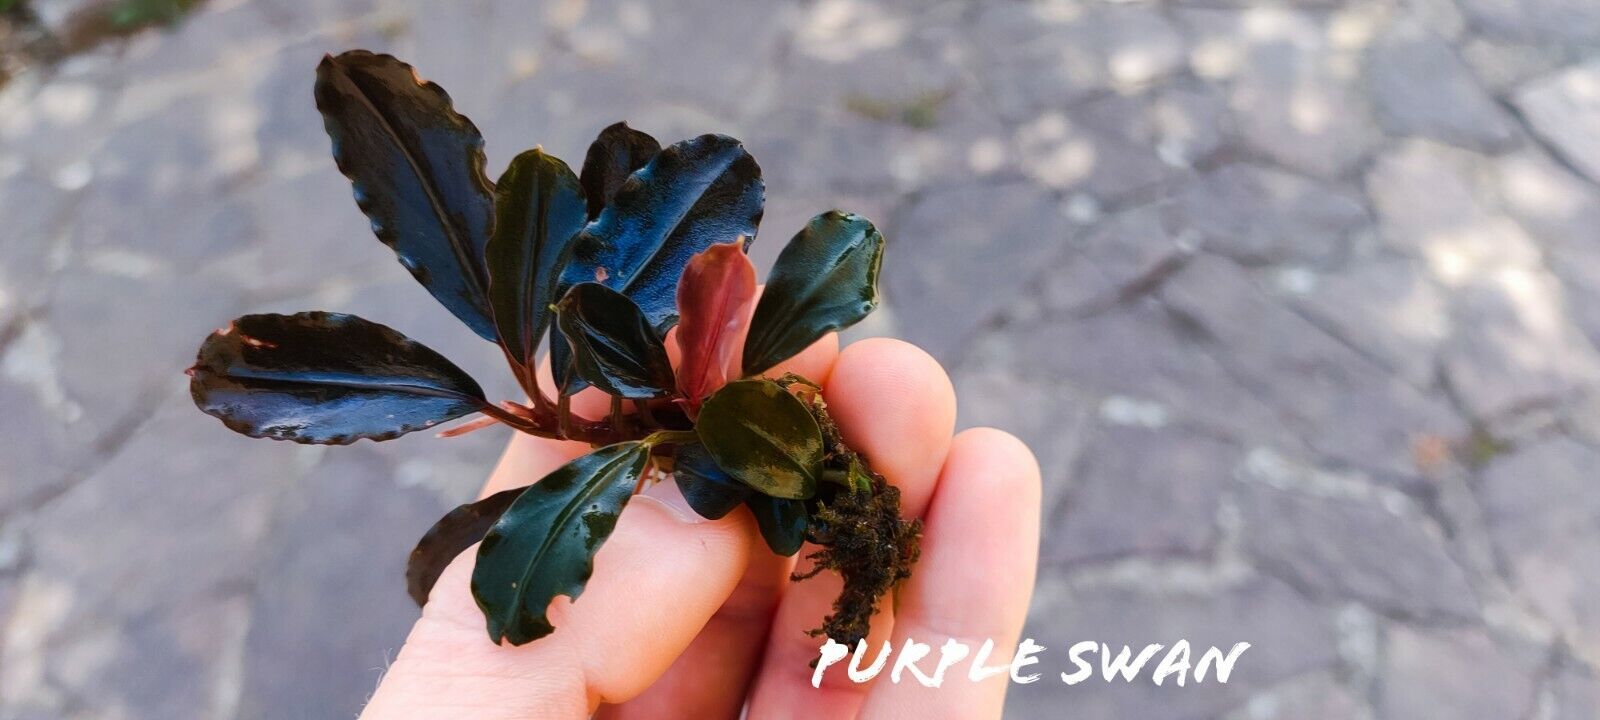 Bucephalandra purple swan İTHAL ADET ÖN SİPARİŞ